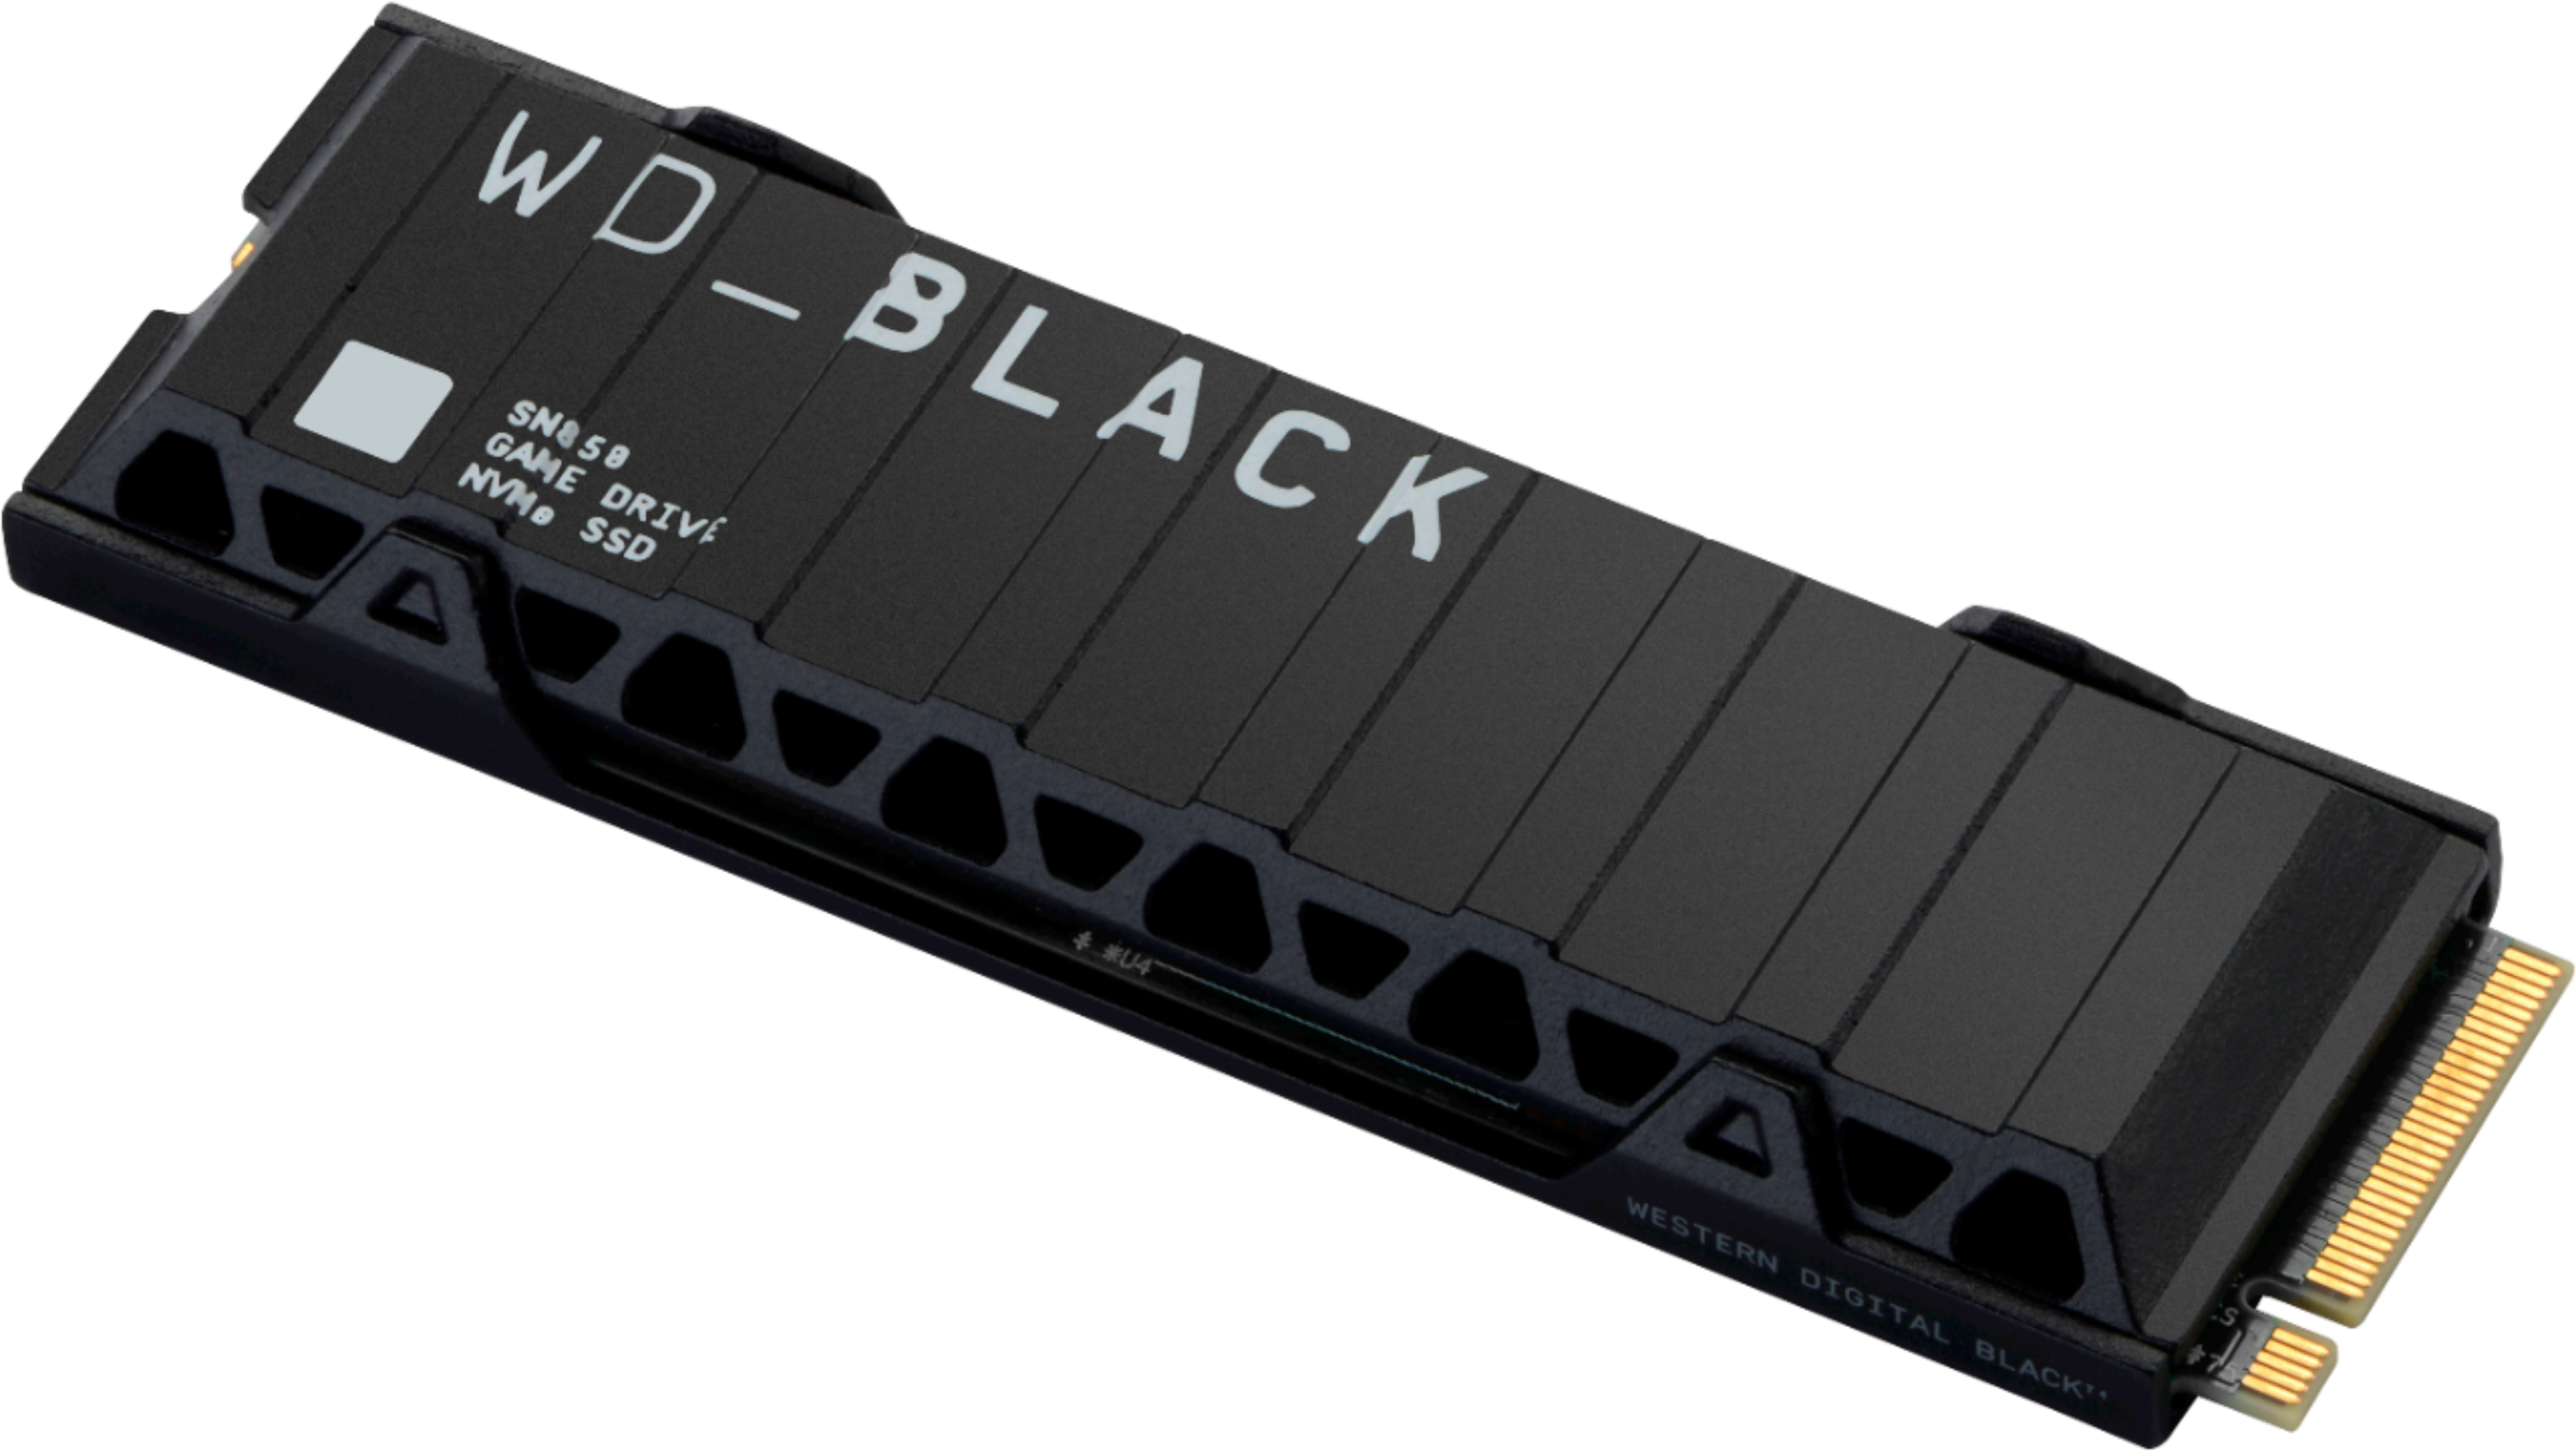 Western Digital Readies WD Black SN850X SSD : r/NewMaxx